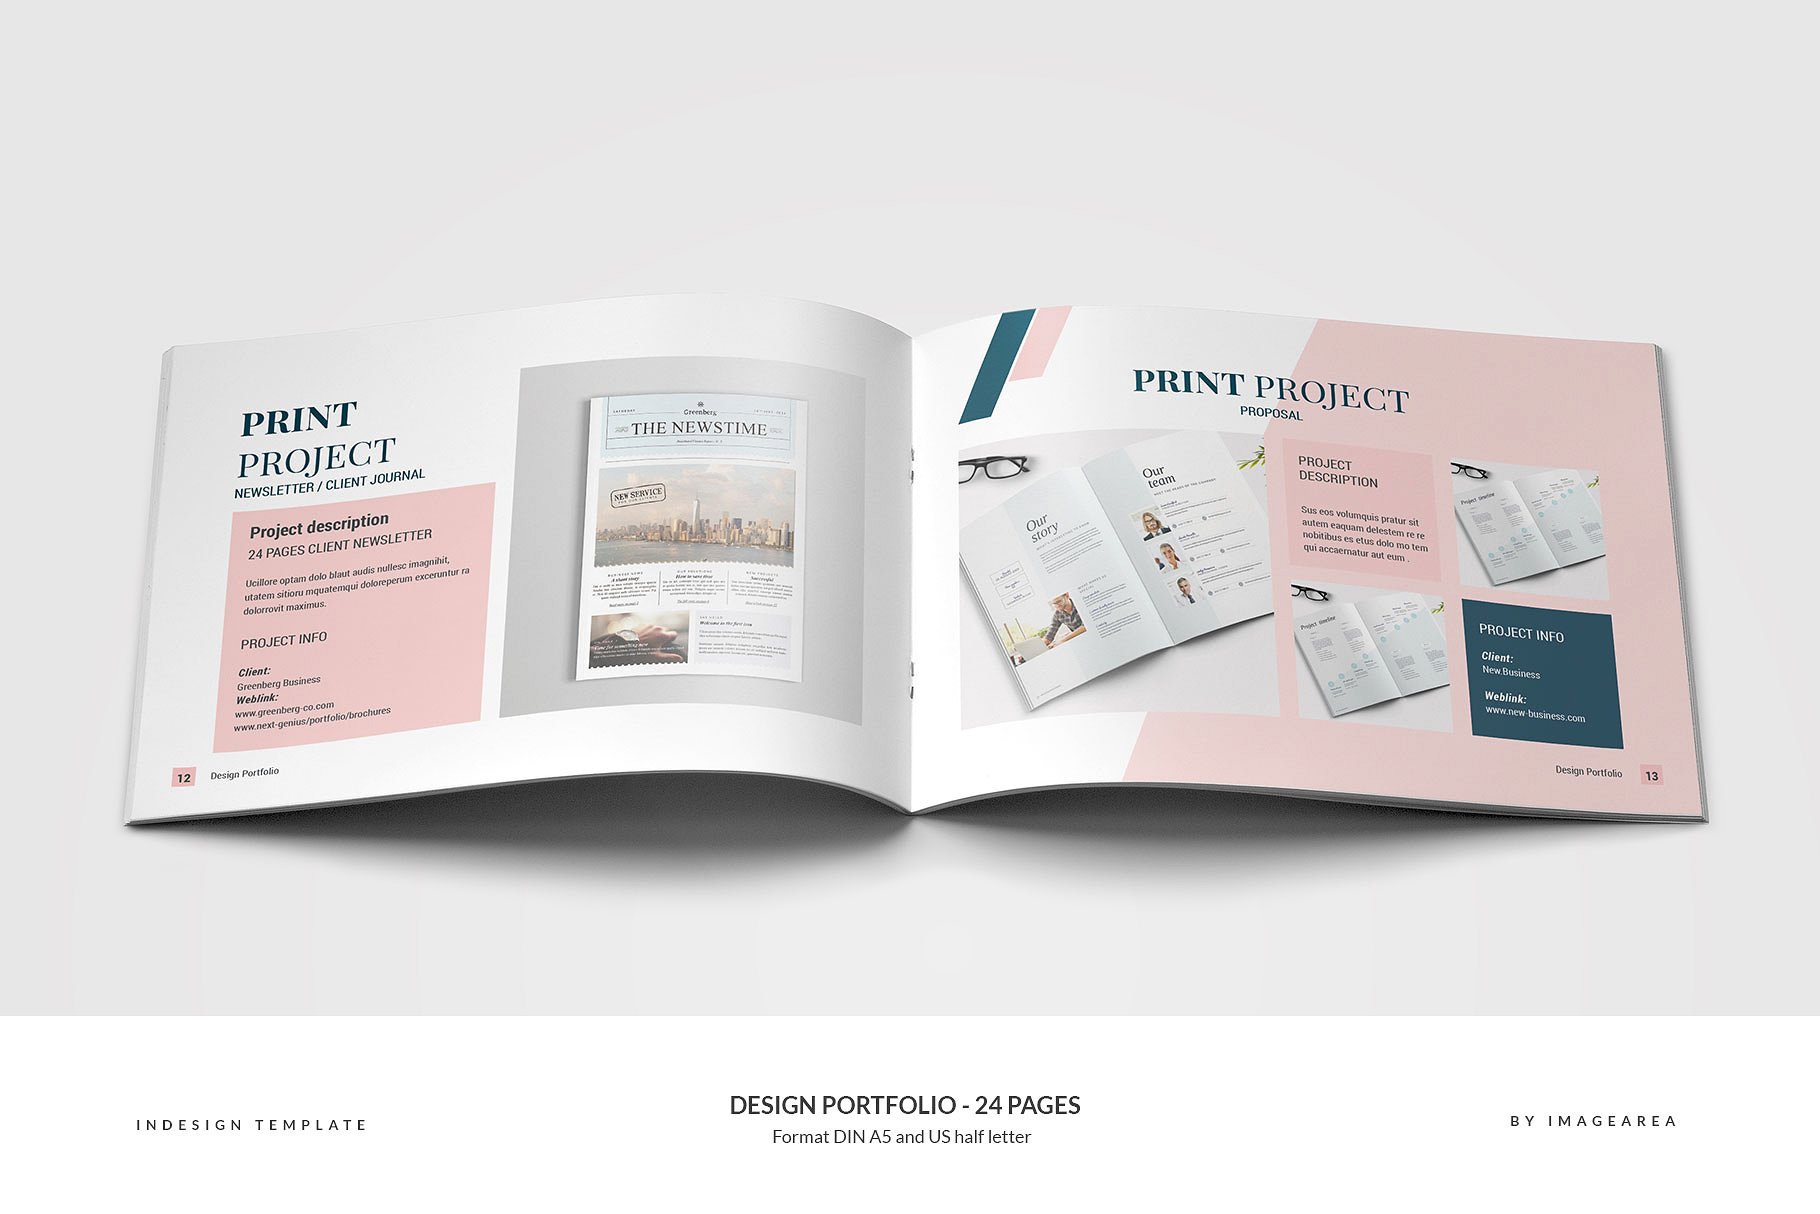 时尚简约企业画册模板 Design Portfolio – 24 Pages插图(6)